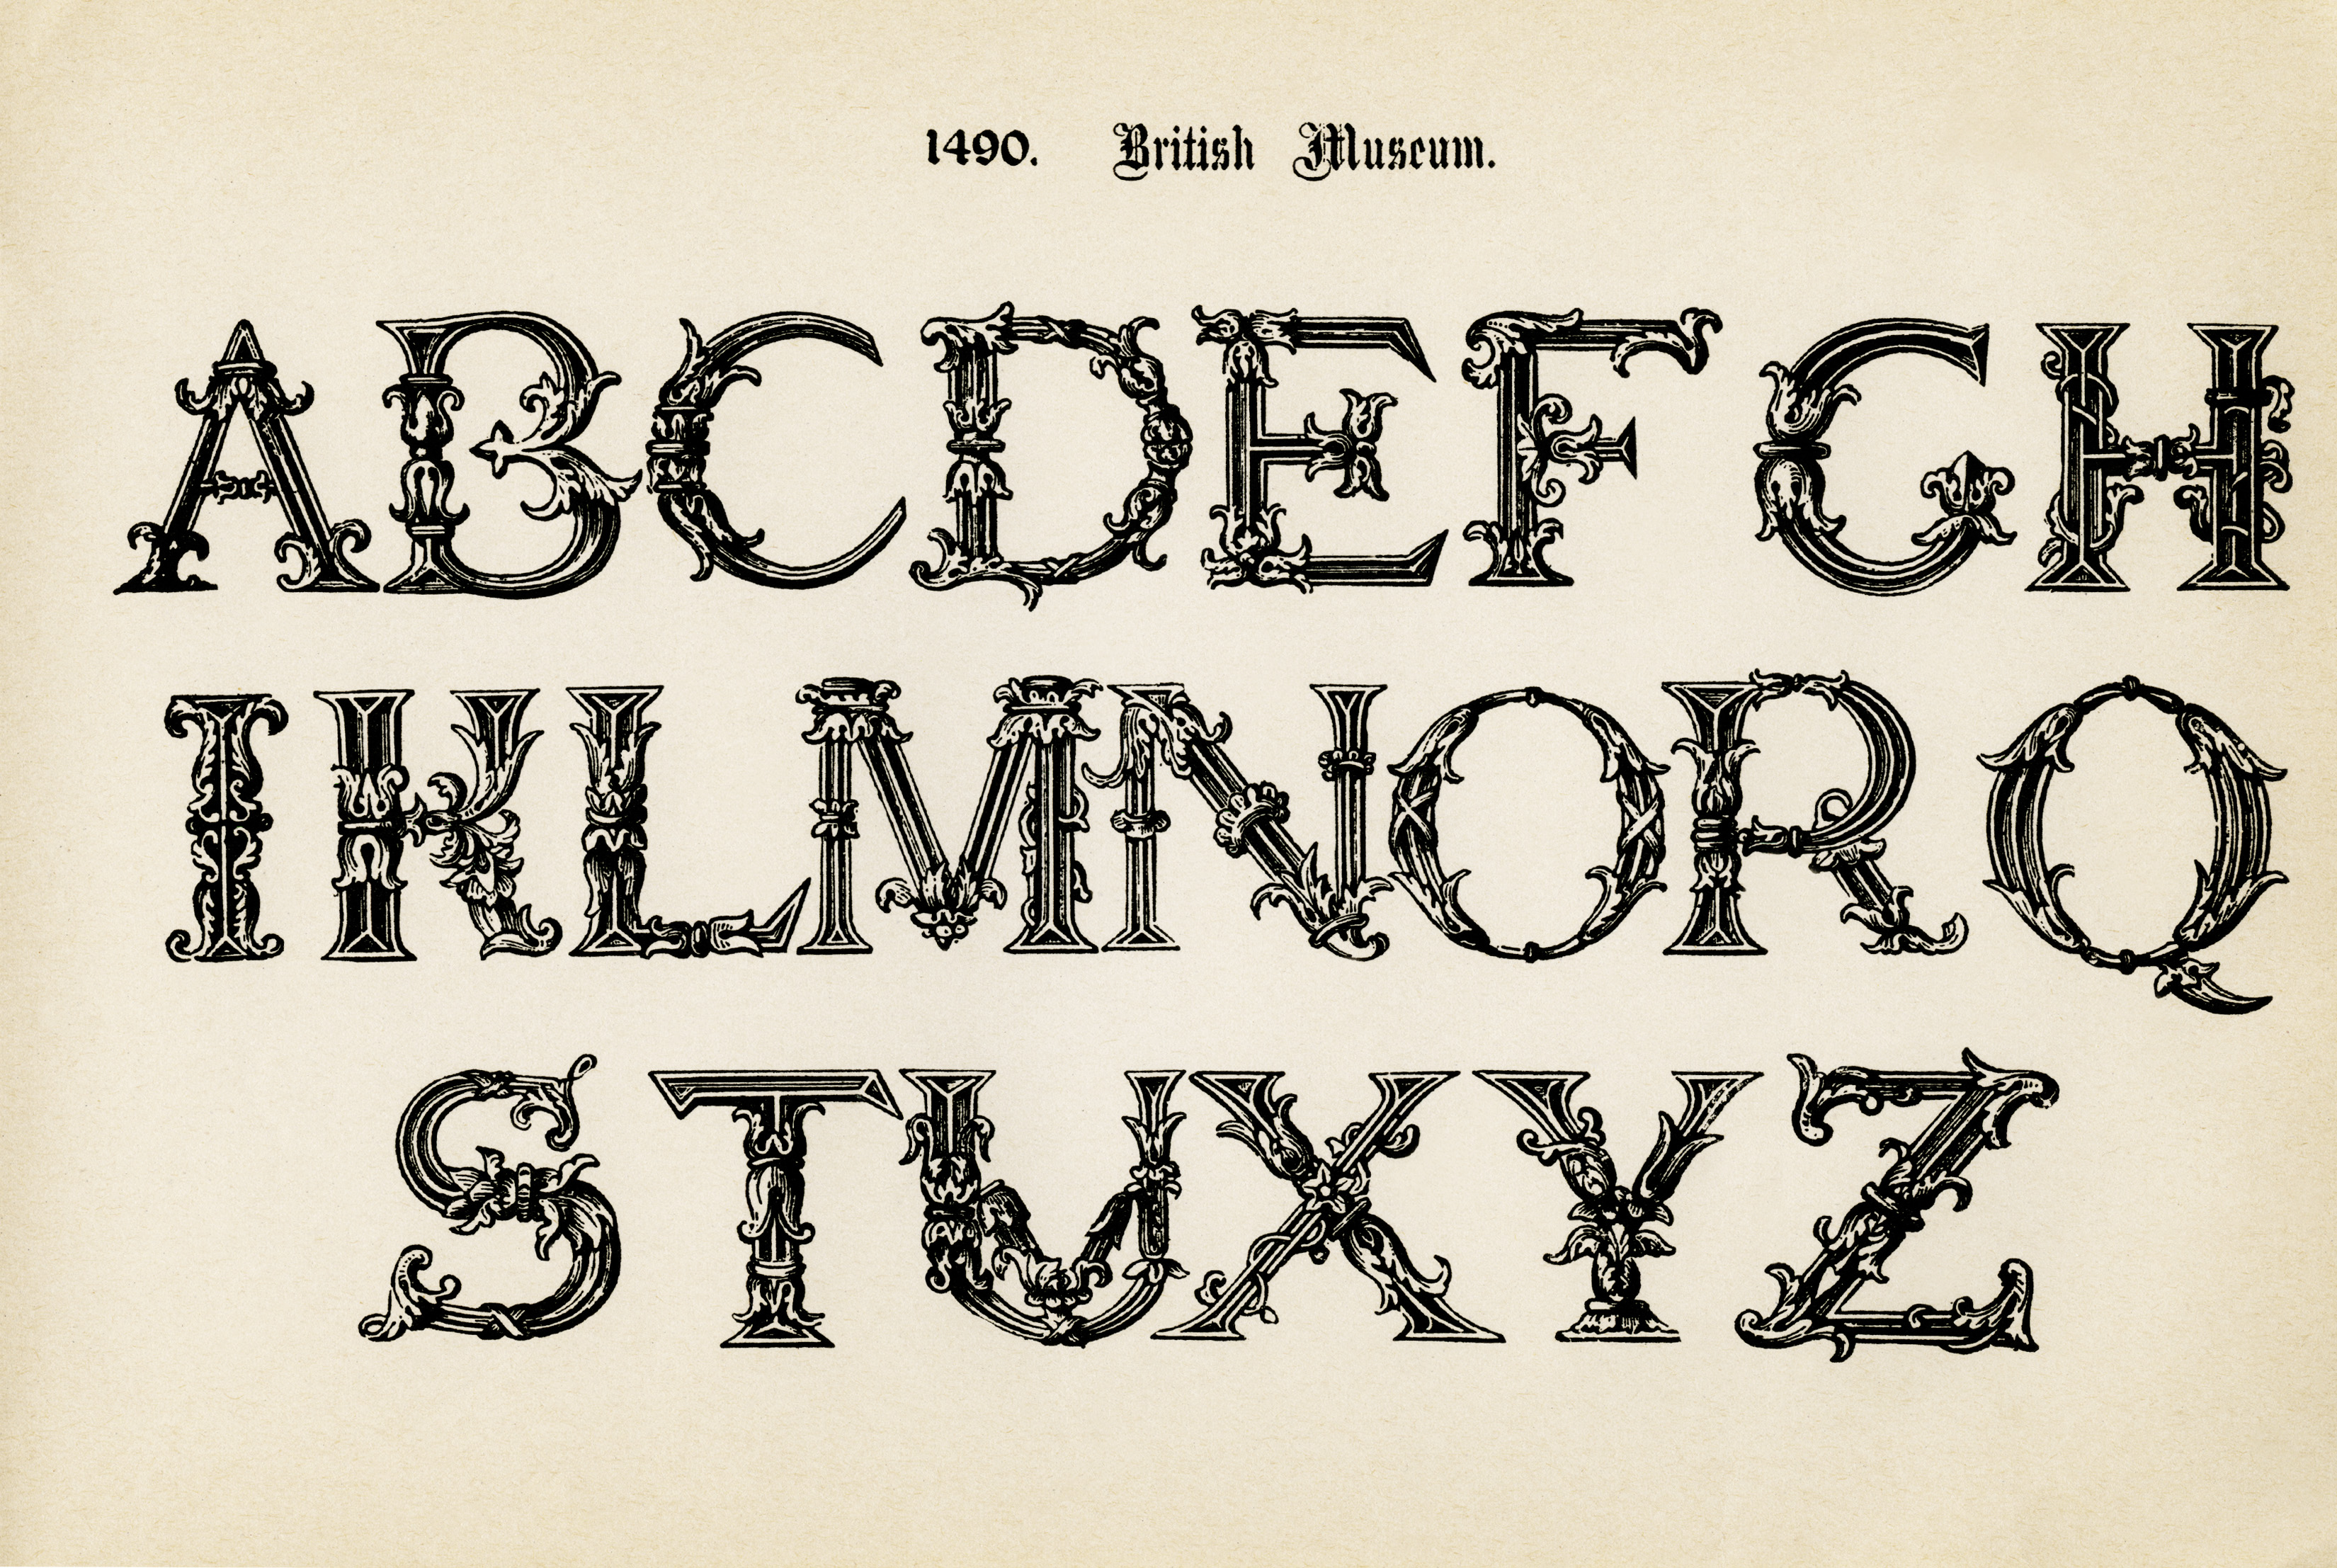 Printable Fancy Alphabet Letters